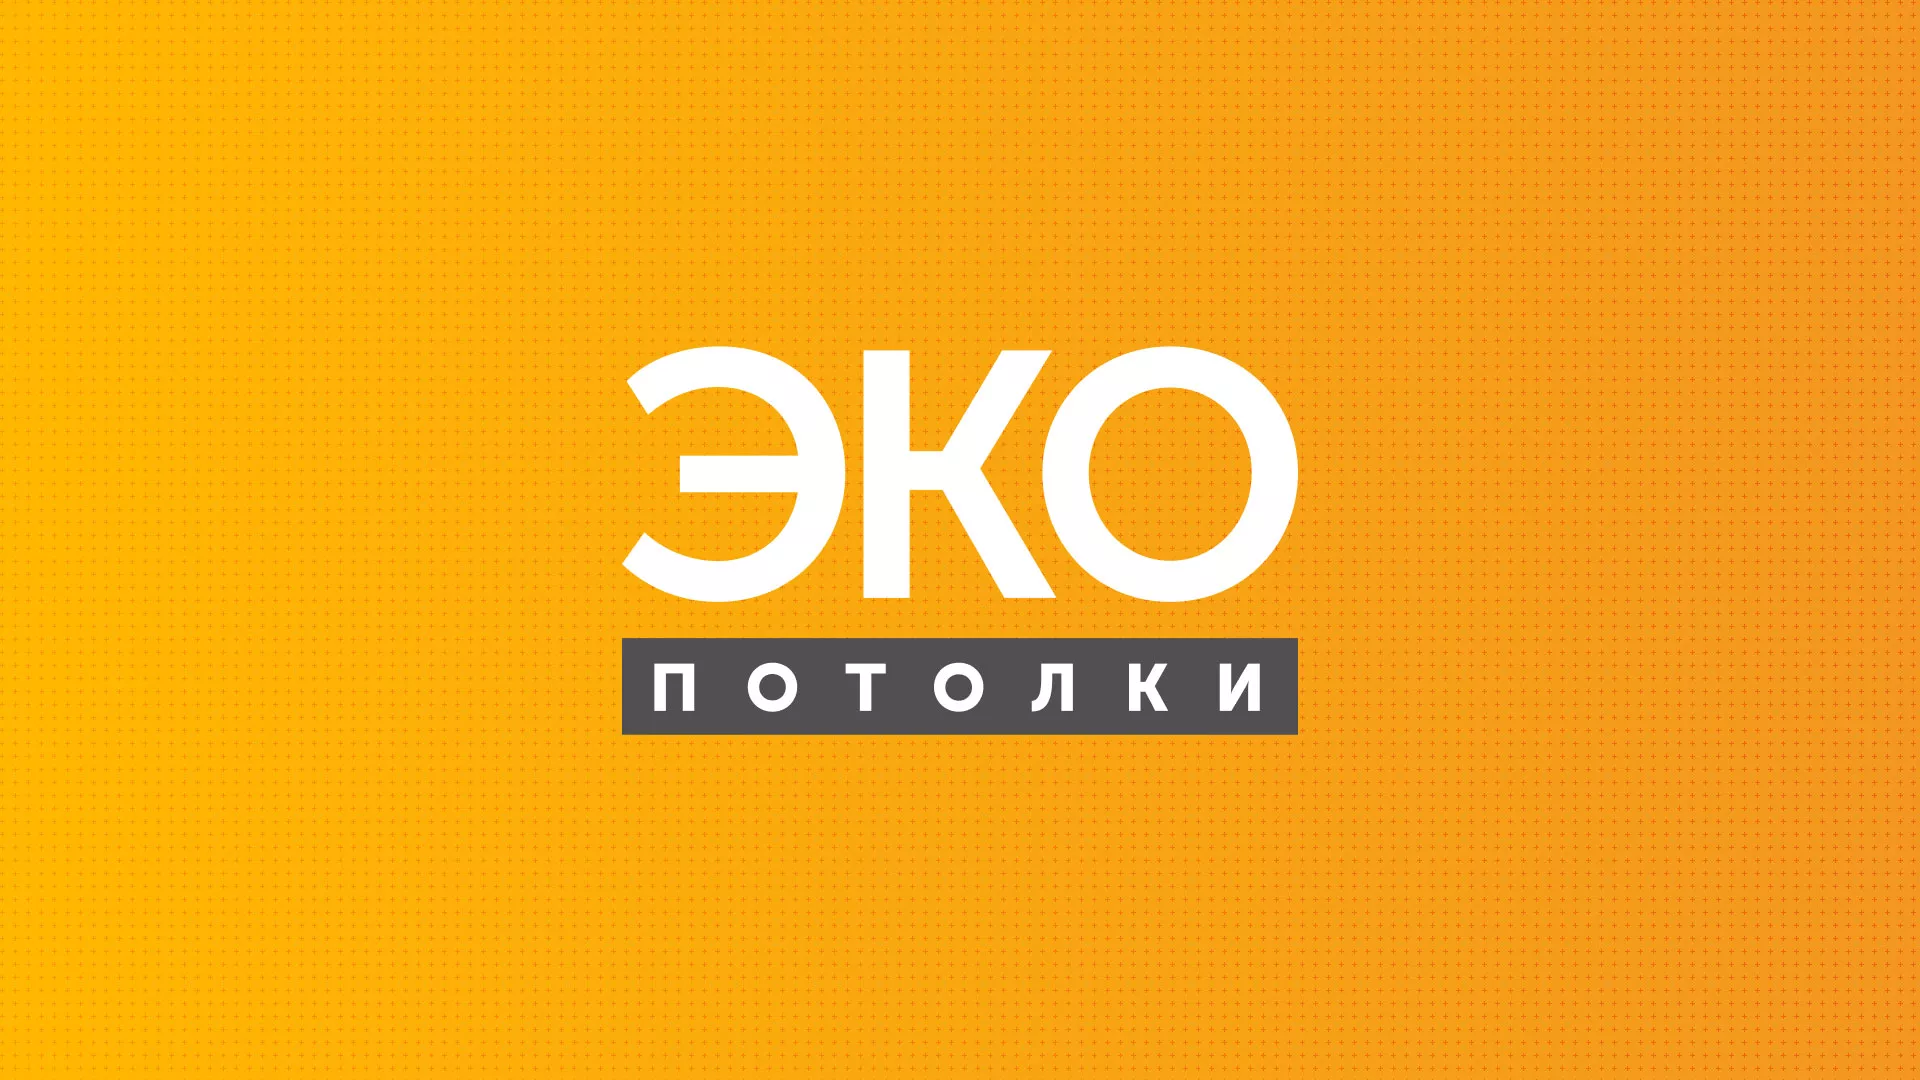 Разработка сайта по натяжным потолкам «Эко Потолки» в Белозерске